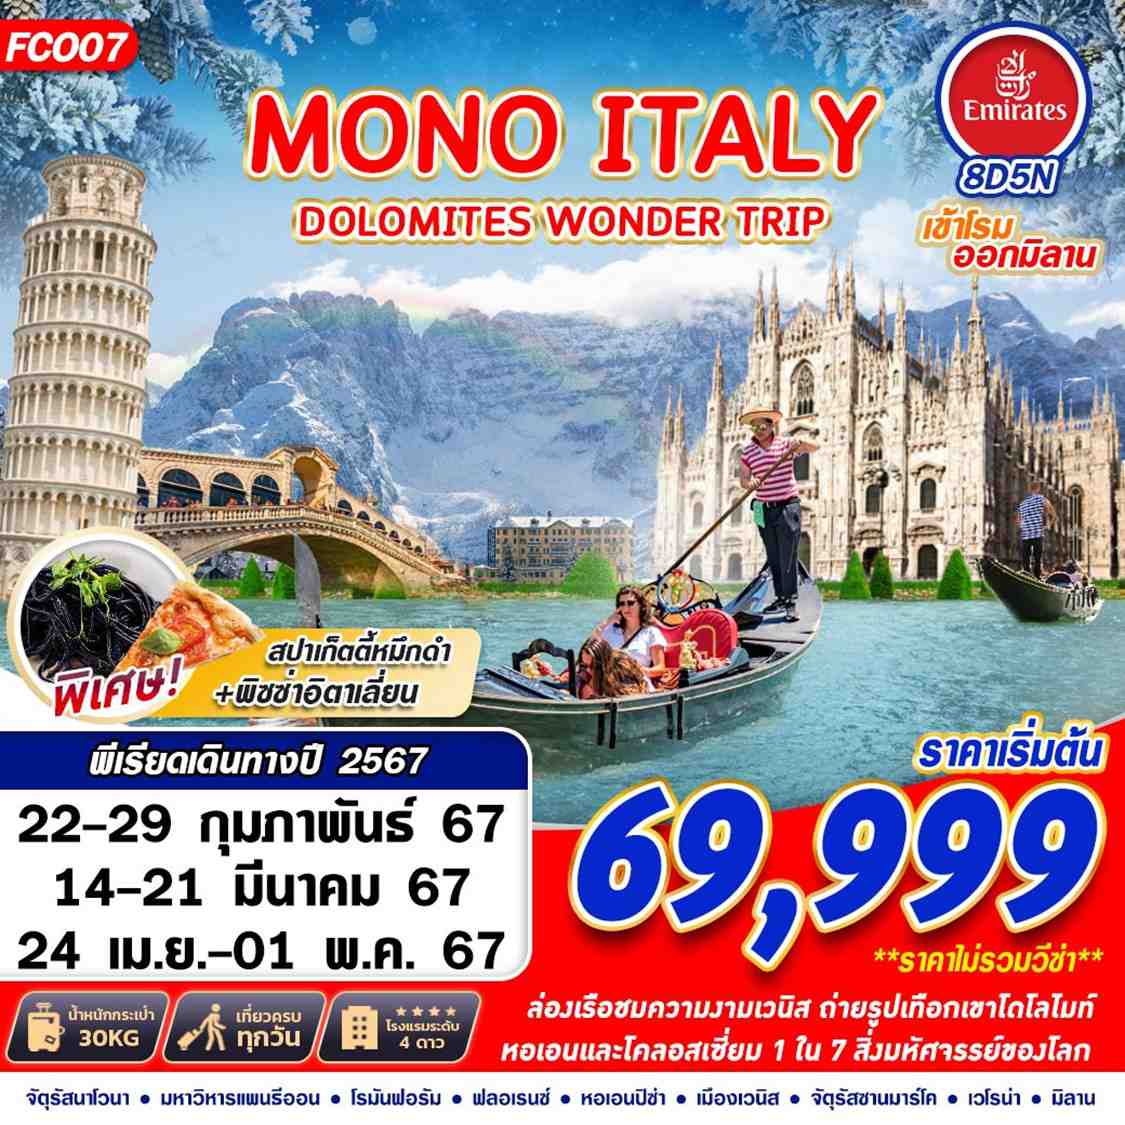 ทัวร์ยุโรป MONO ITALY DOLOMITES WONDER TRIP